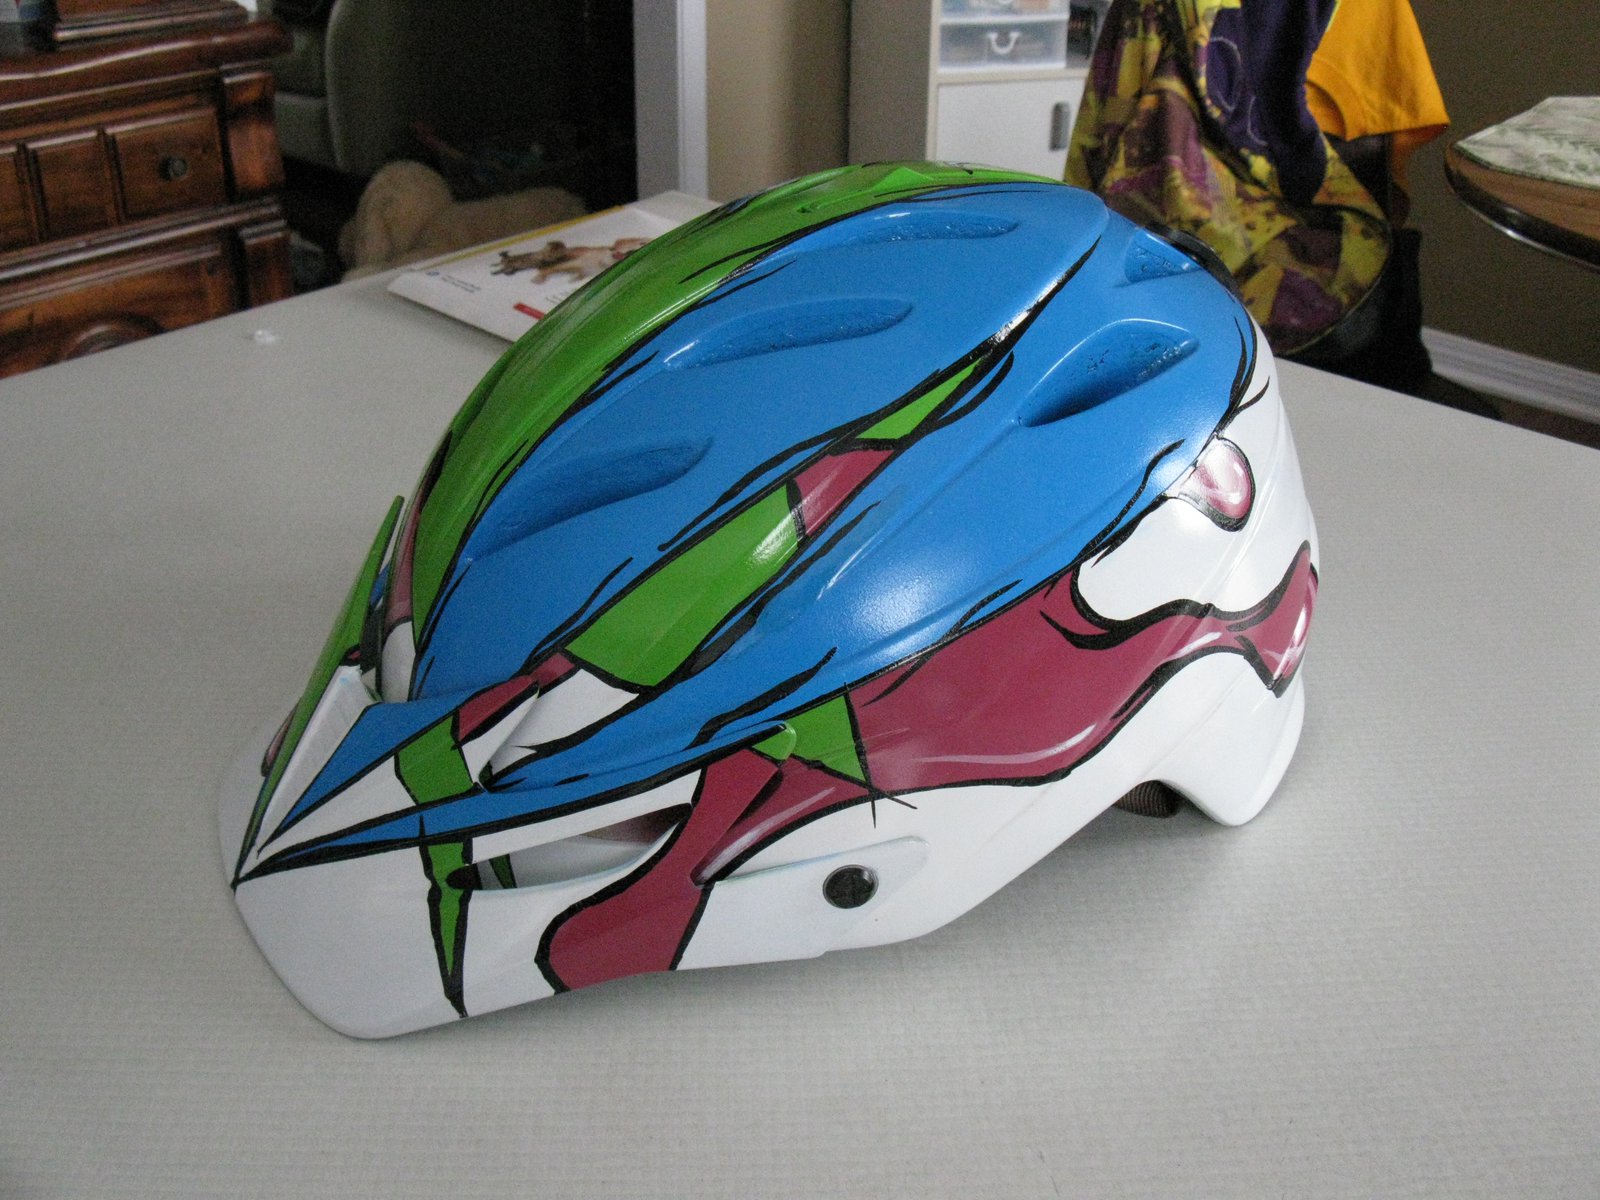 Helmet Left side